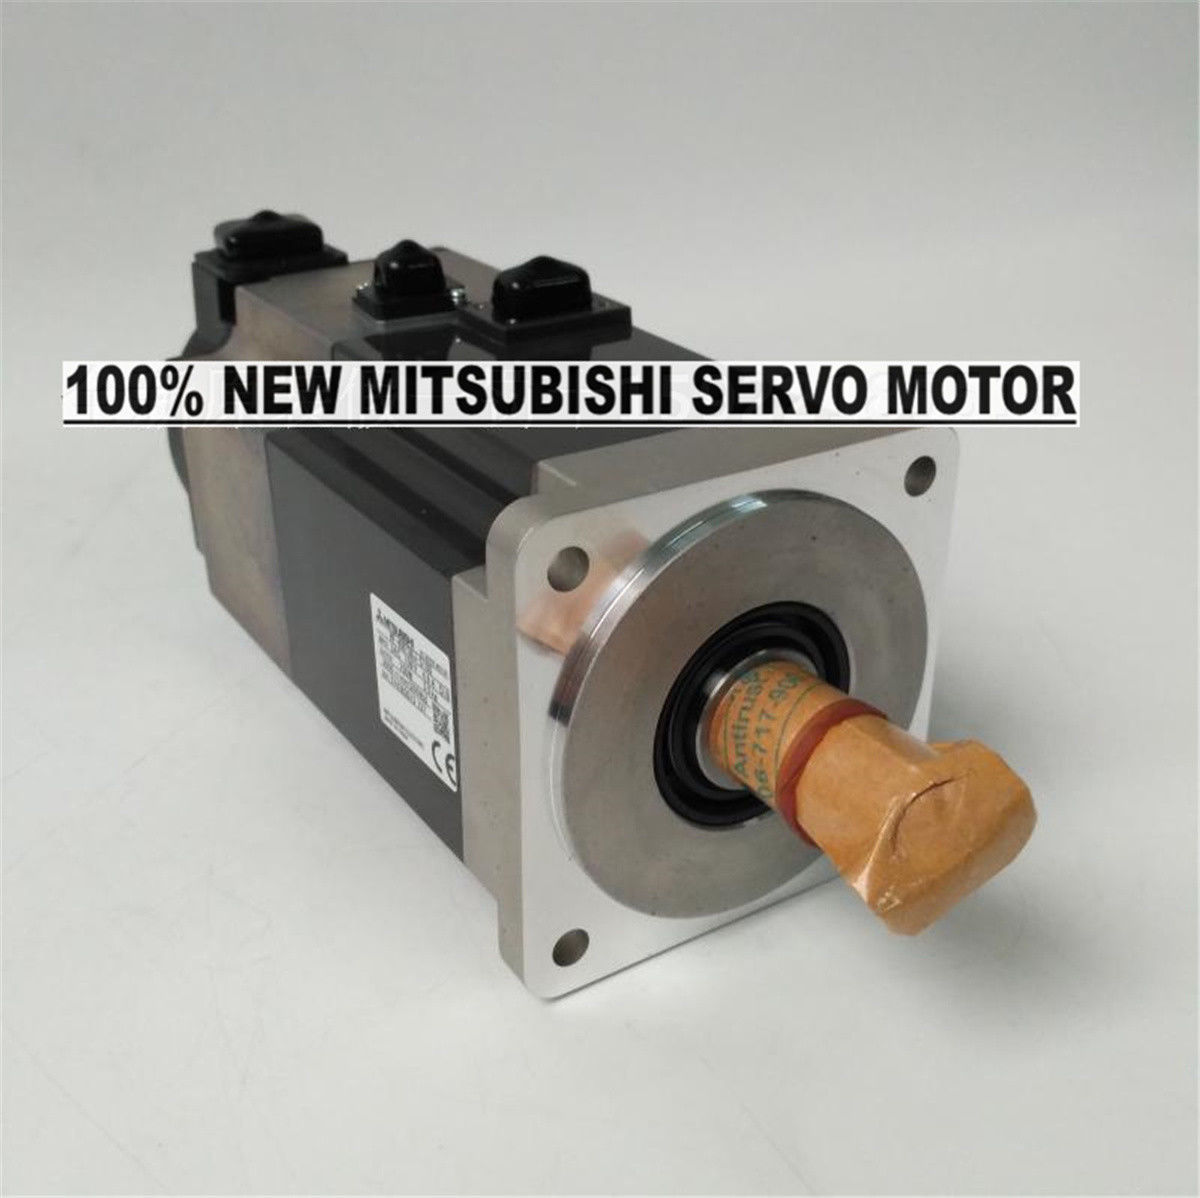 NEW Mitsubishi Servo Motor HF-KN73BJ-S100 in box HFKN73BJS100 - Click Image to Close